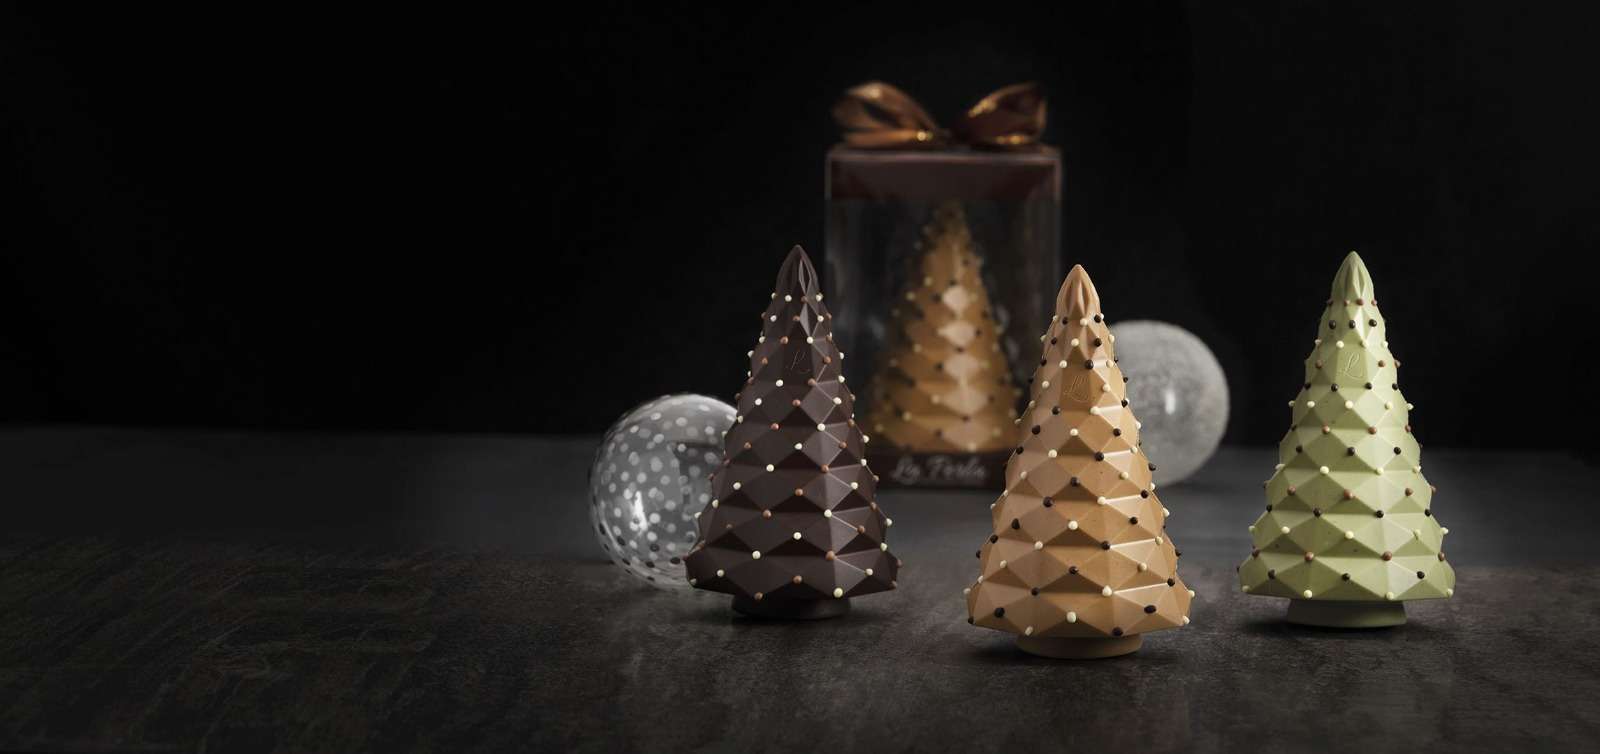 La magia del Natale profuma di cioccolato con le creazioni firmate La Perla di Torino